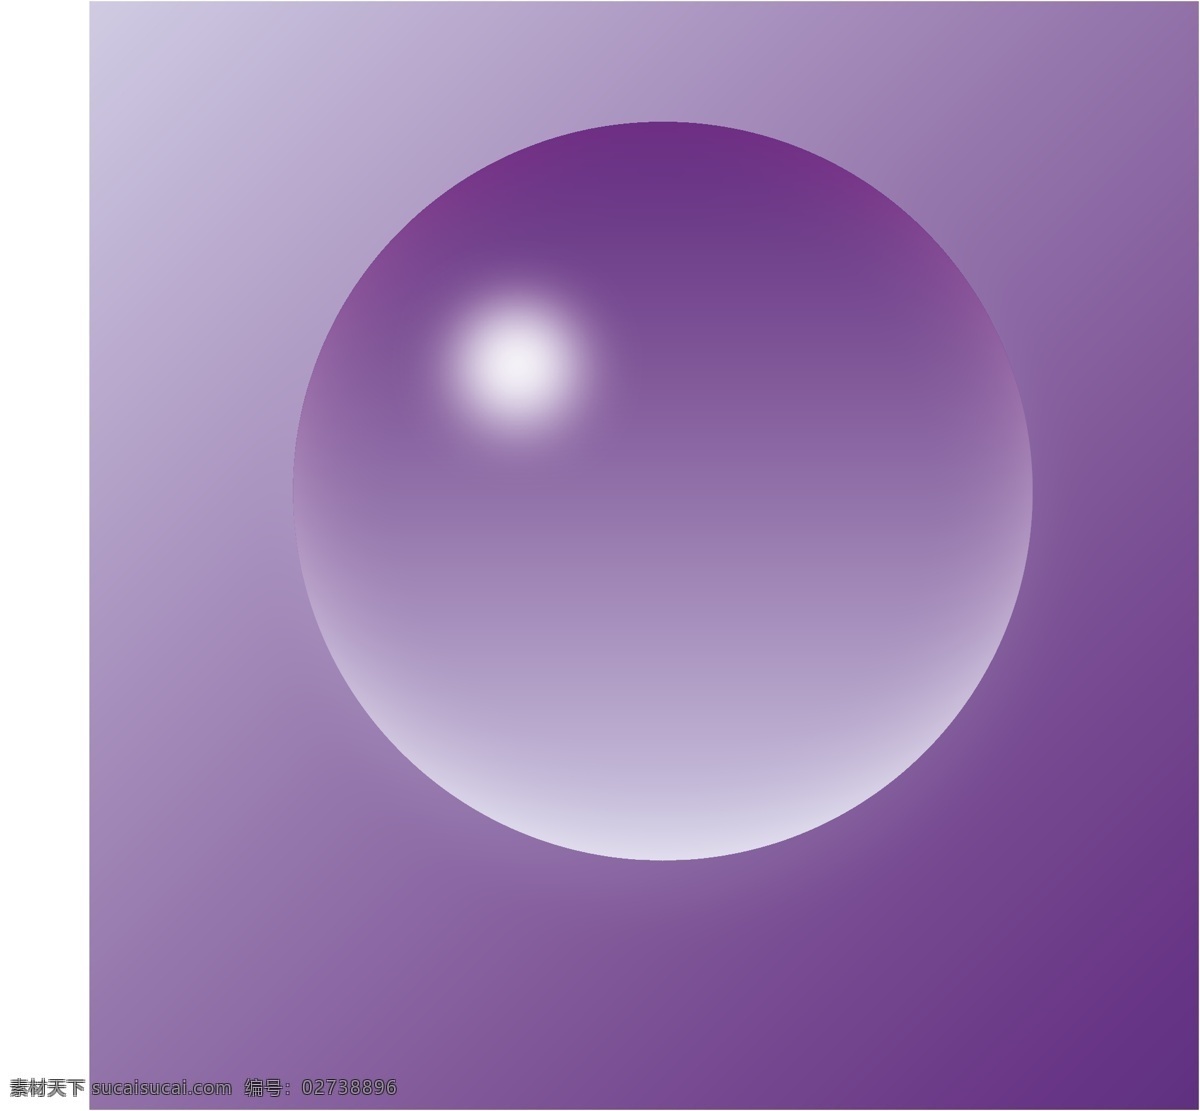 球体免费下载 立体 球体 矢量图 紫色 高斯模糊 其他矢量图